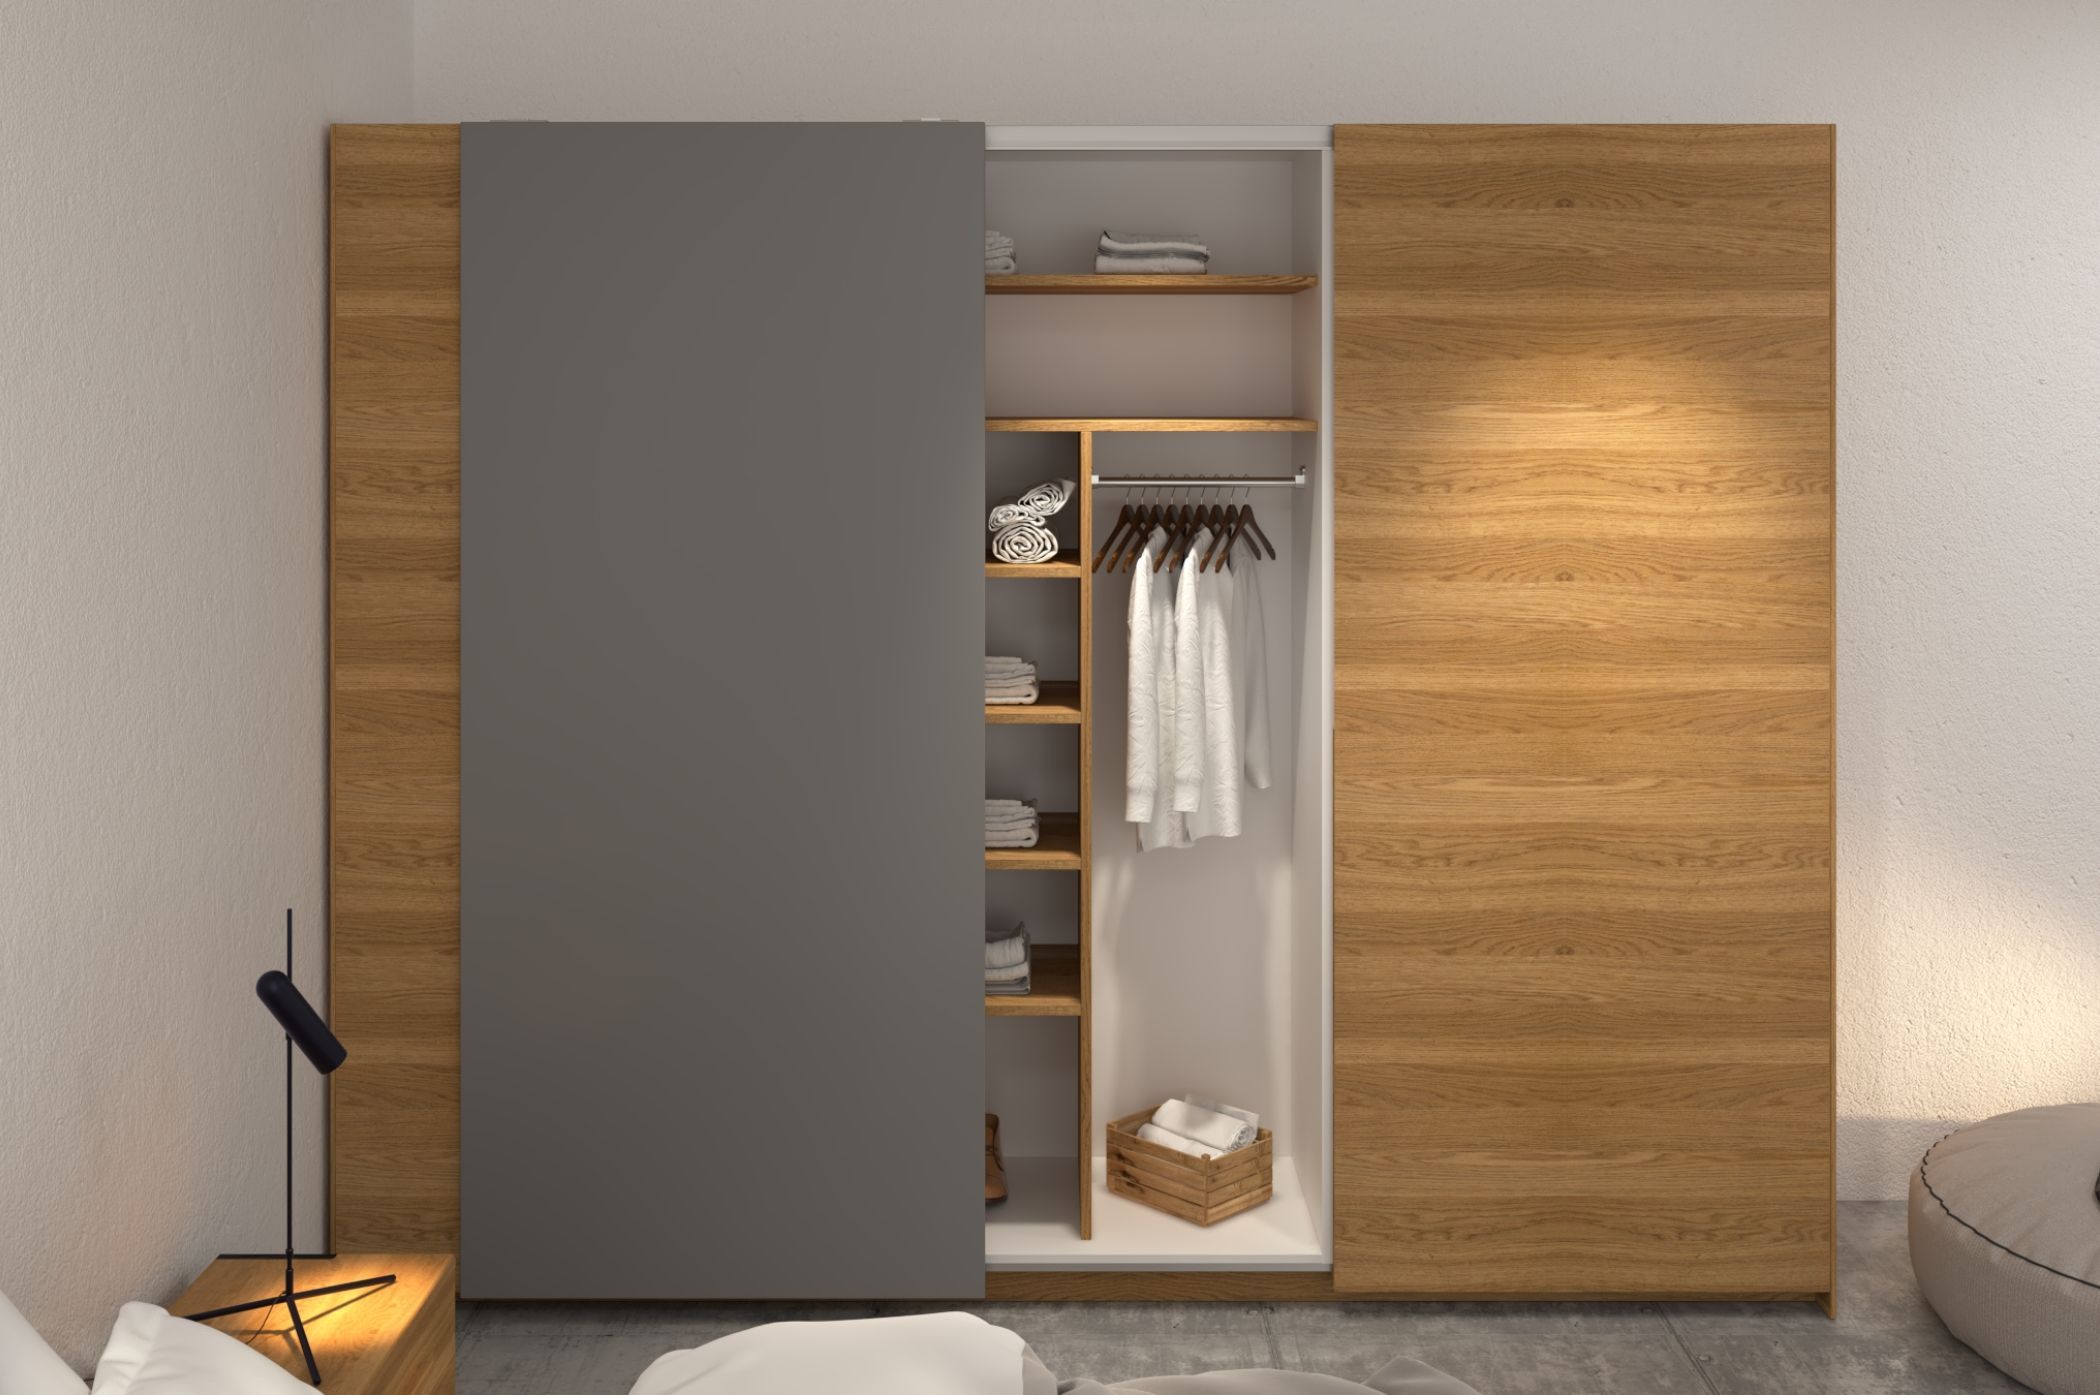 Tủ quần áo gỗ sồi đa chức năng - Thiết kế thông minh với nhiều ngăn kéo và ngăn treo, giúp sắp xếp quần áo và phụ kiện một cách dễ dàng và tiện lợi.